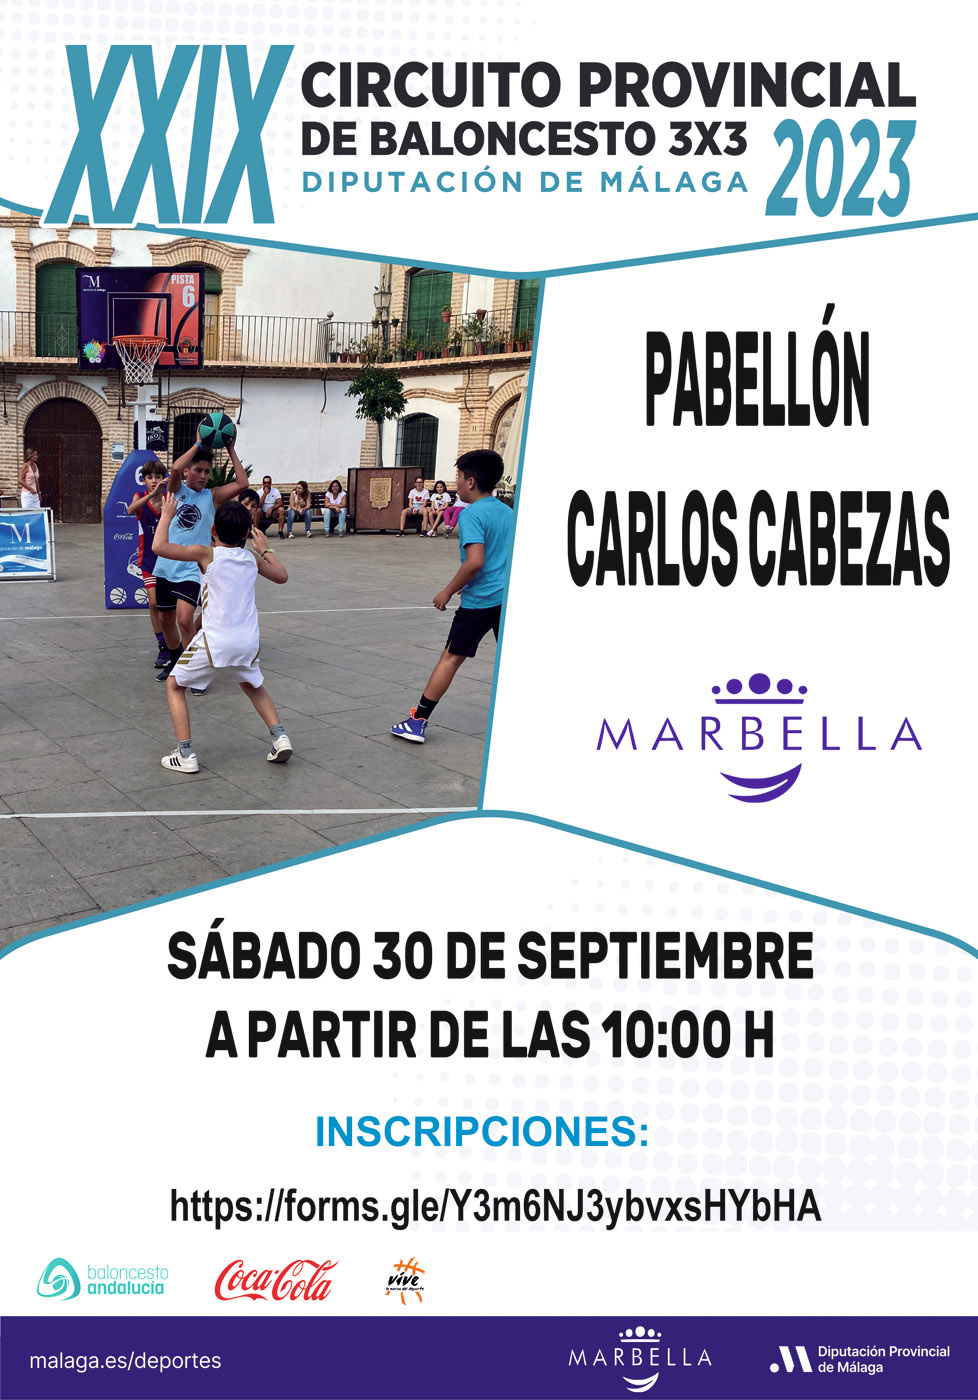 El pabellón deportivo Carlos Cabezas albergará el próximo 30 de septiembre el Torneo de Baloncesto 3x3 del XXIX Circuito Provincial